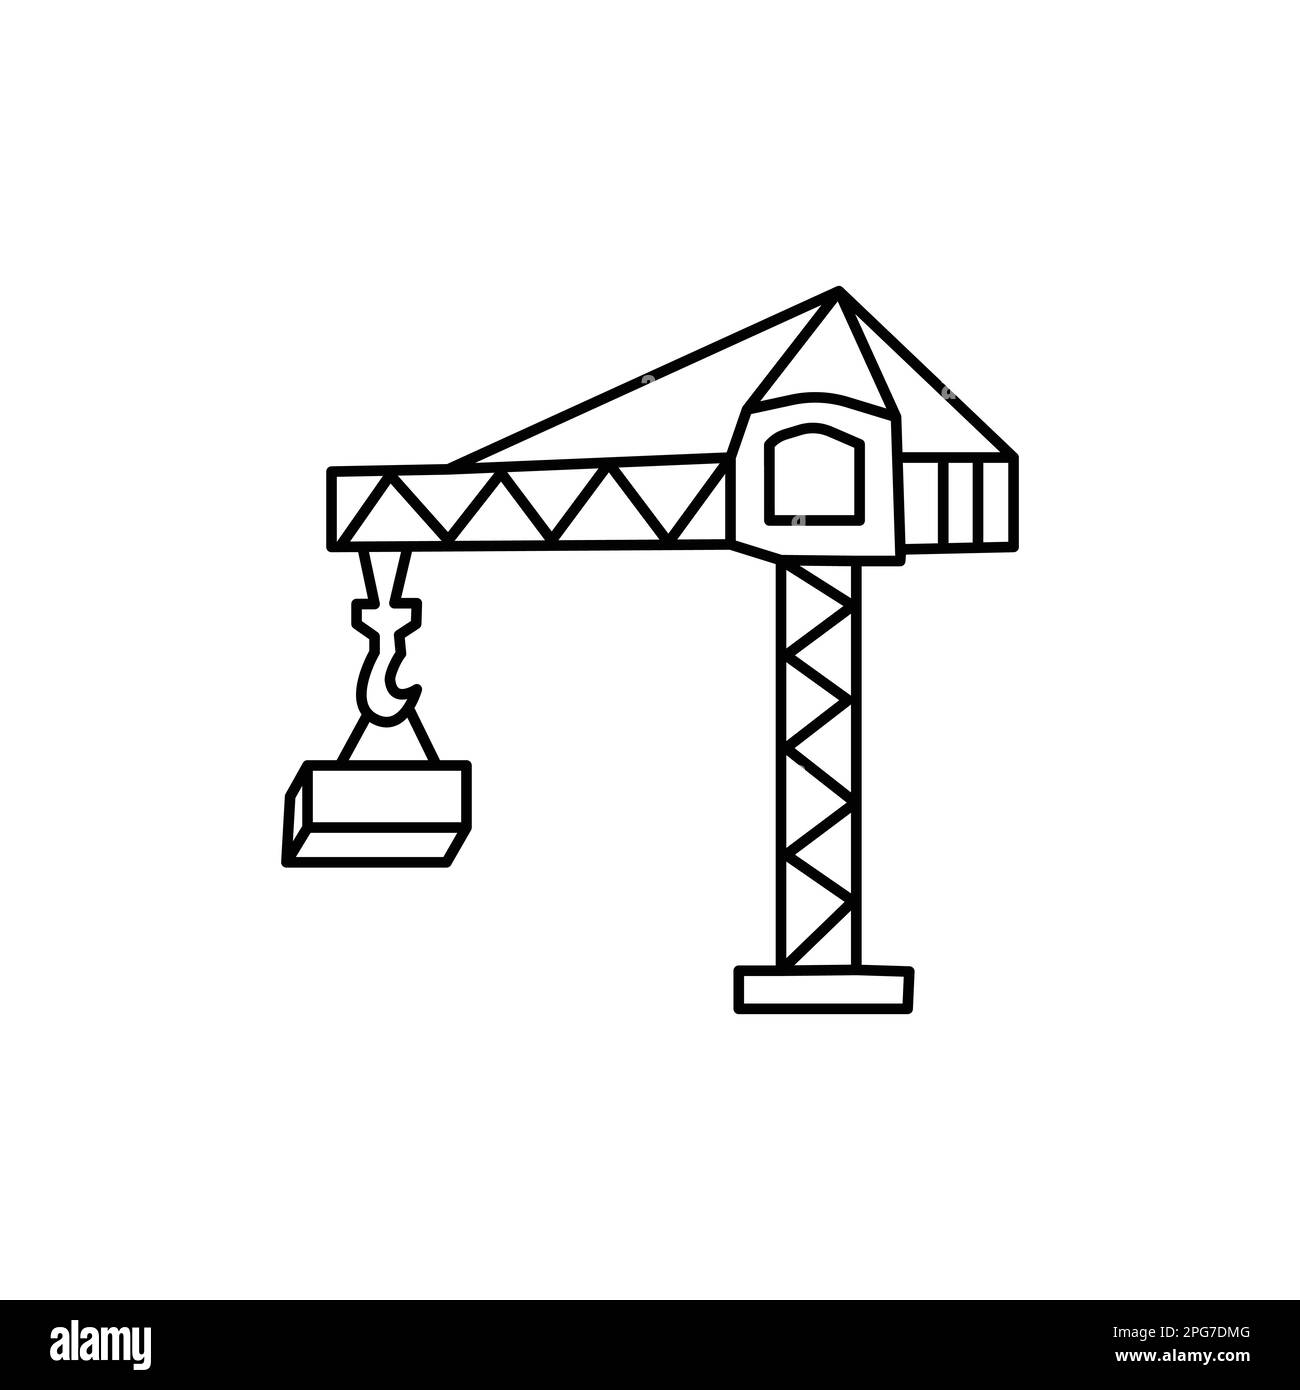 Turmkran-Symbol. Symbolvorlage für Turmkran für Grafik- und Webdesign-Sammlung Logo-Vektordarstellung Stock Vektor